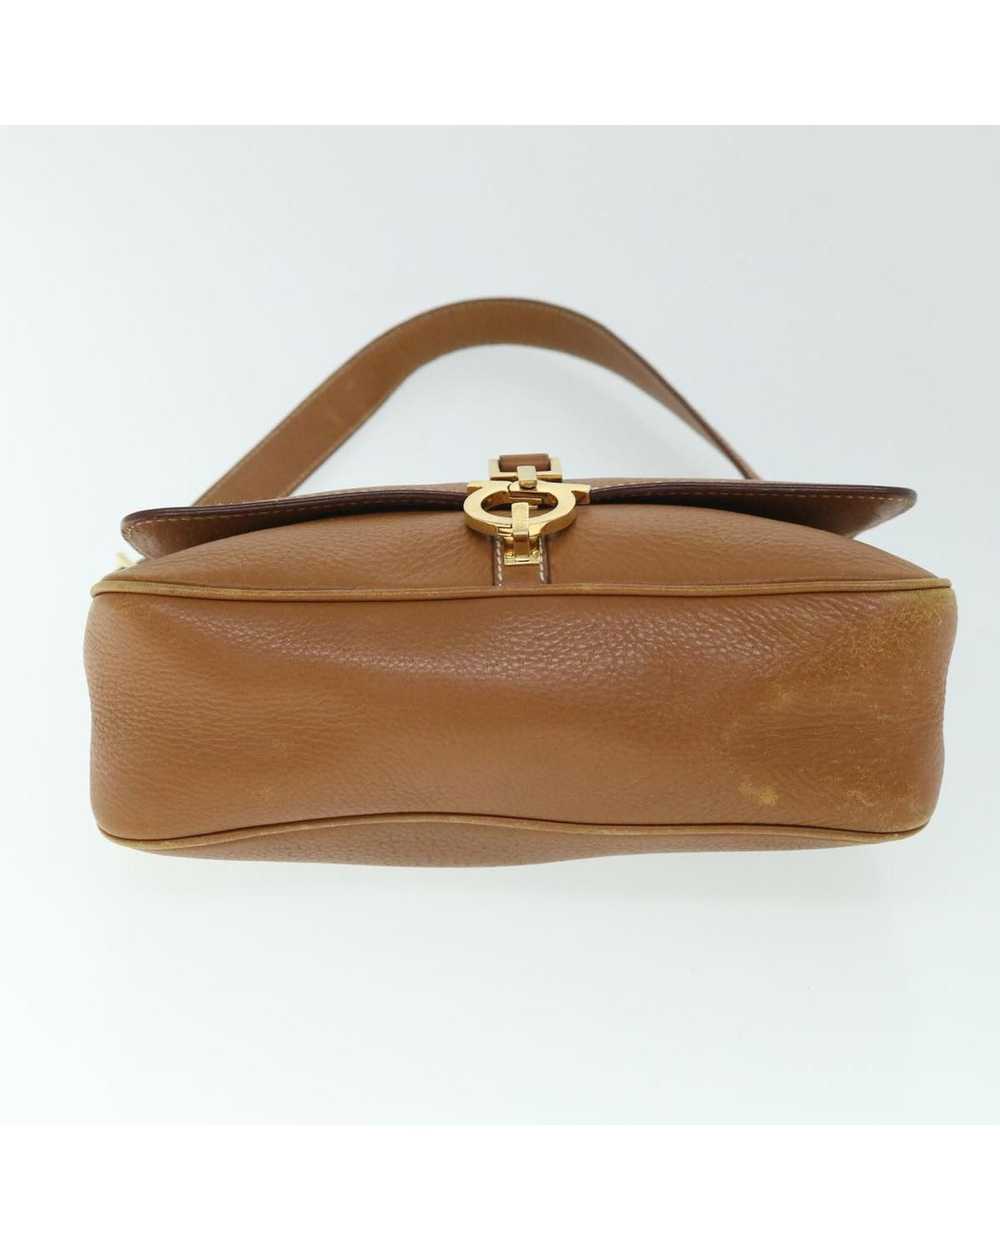 Salvatore Ferragamo Elegant Brown Leather Bag - image 10